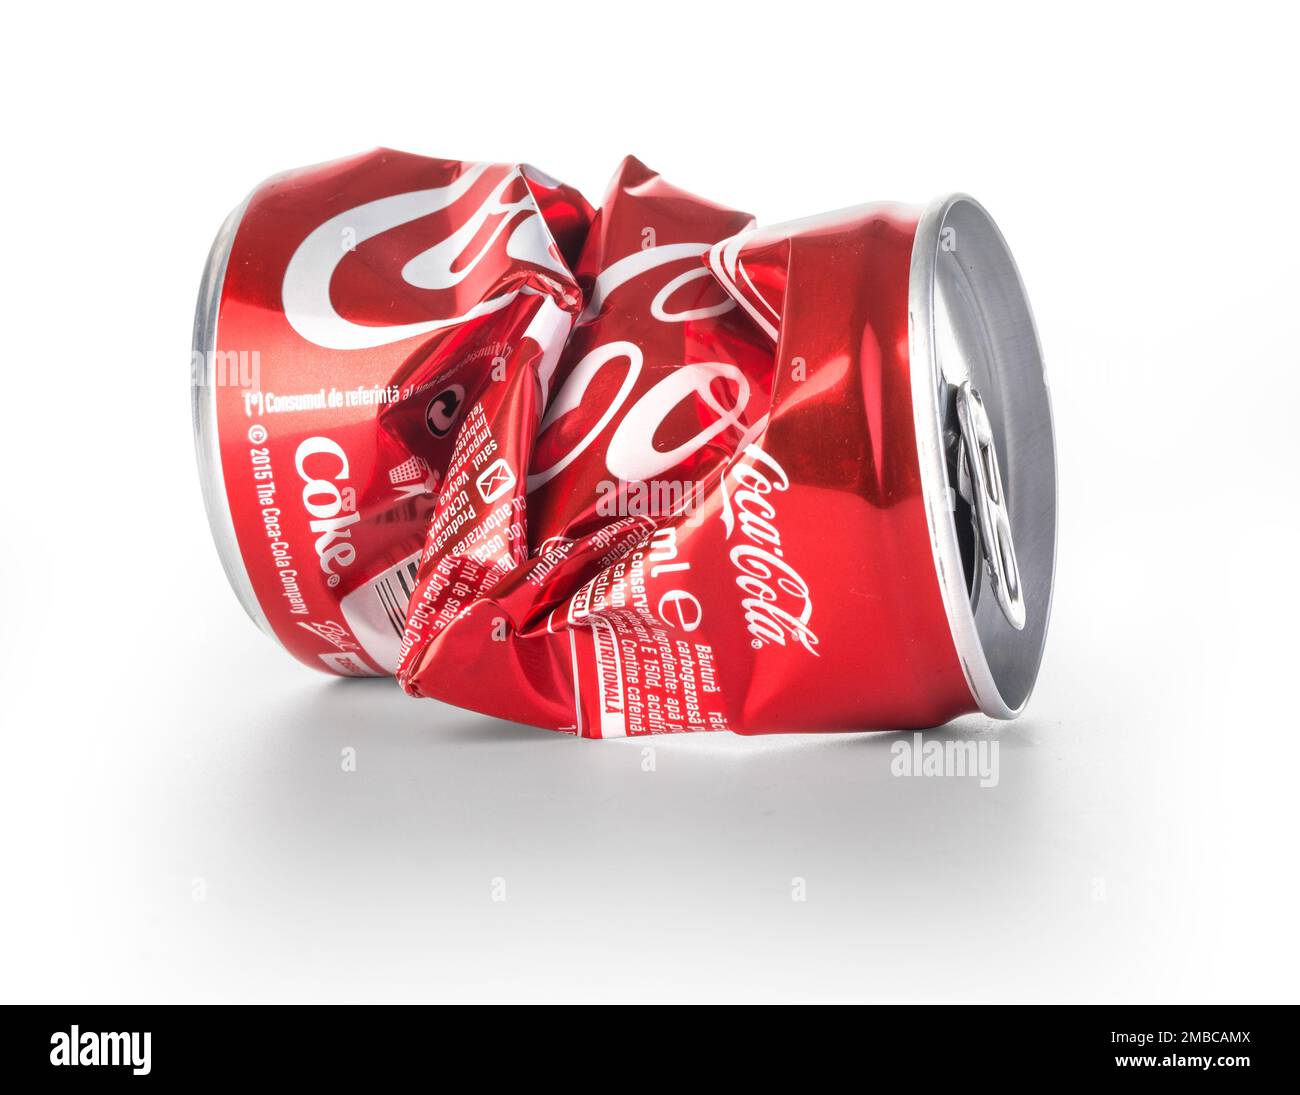 Coke coca cola can rubbish -Fotos und -Bildmaterial in hoher